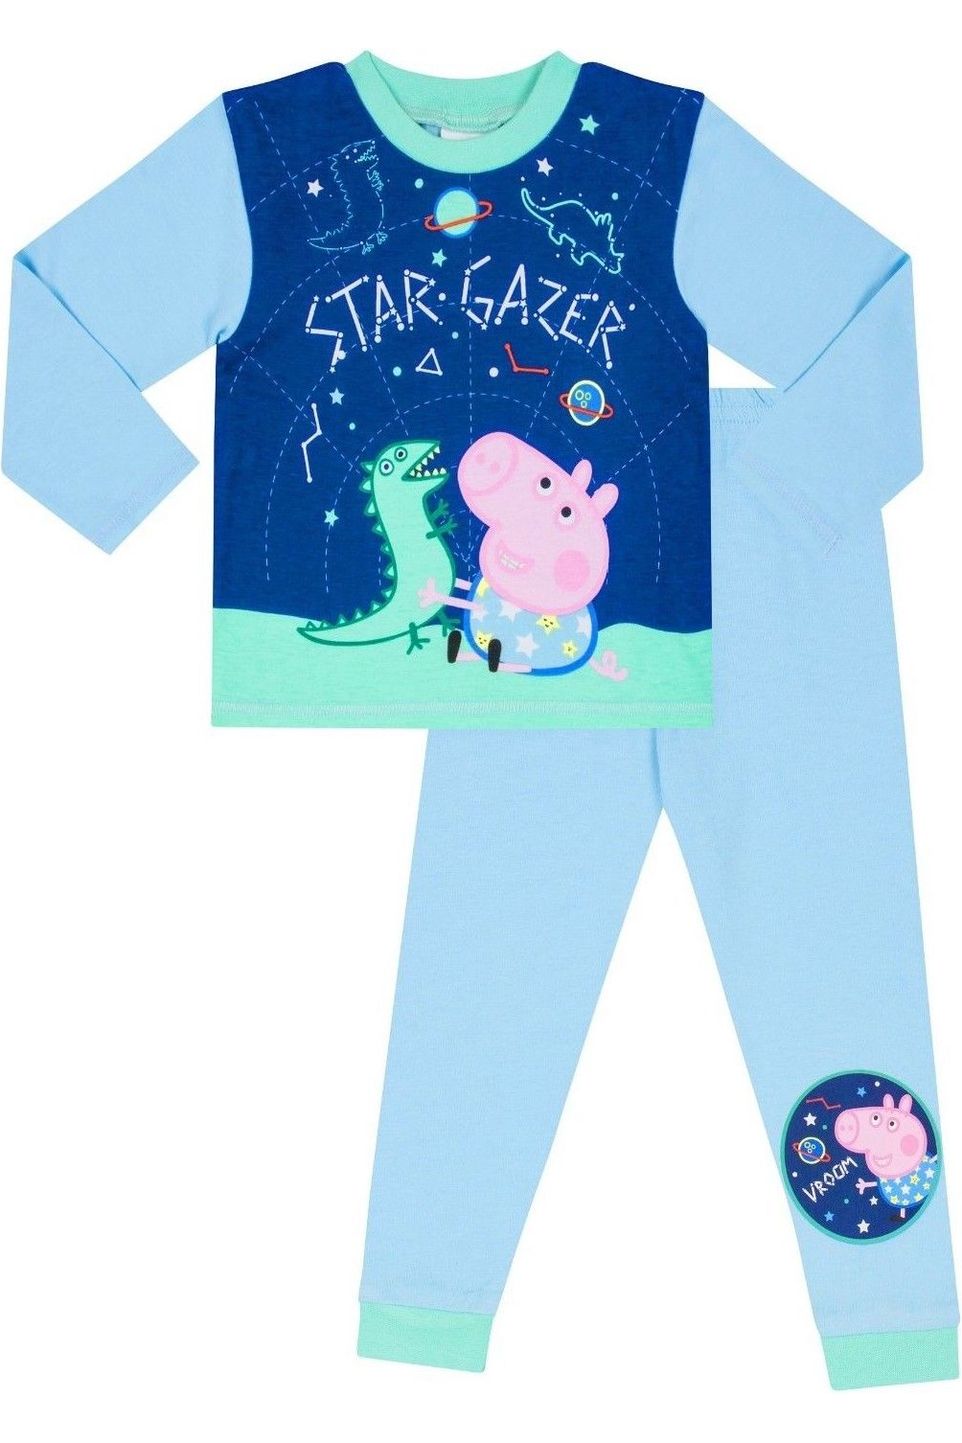 Boys George Pig Stargazer Pyjamas - Pyjamas.com